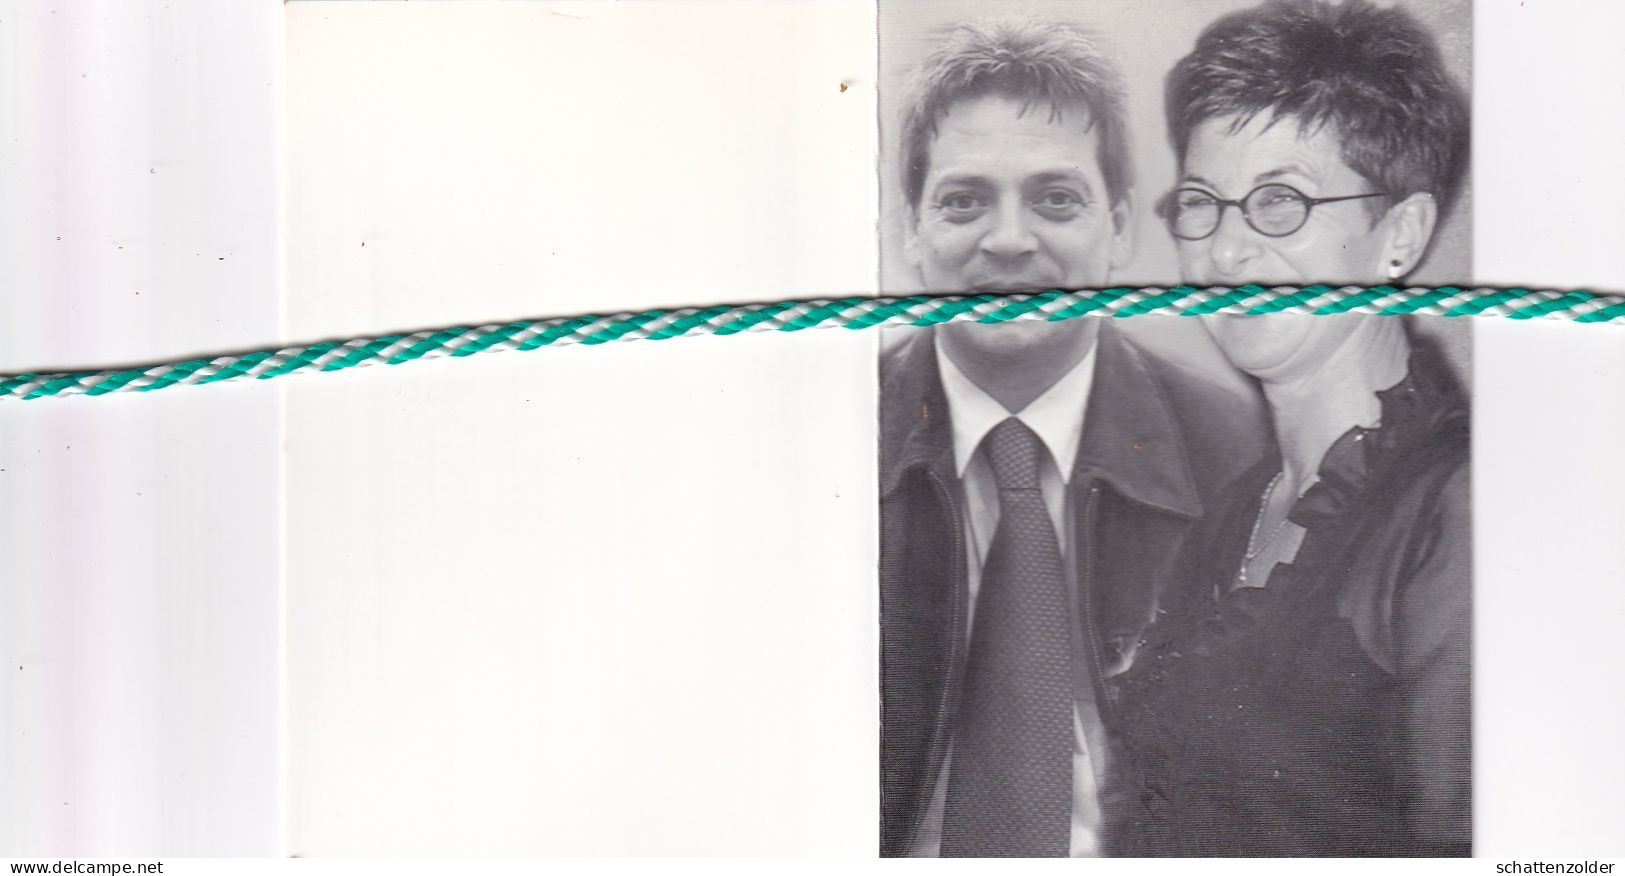 Paul Dhooghe (Kruibeke,1966) En Nicole Van Berendonk (Antwerpen 1954), Antwerpen 2003. Foto Koppel - Décès